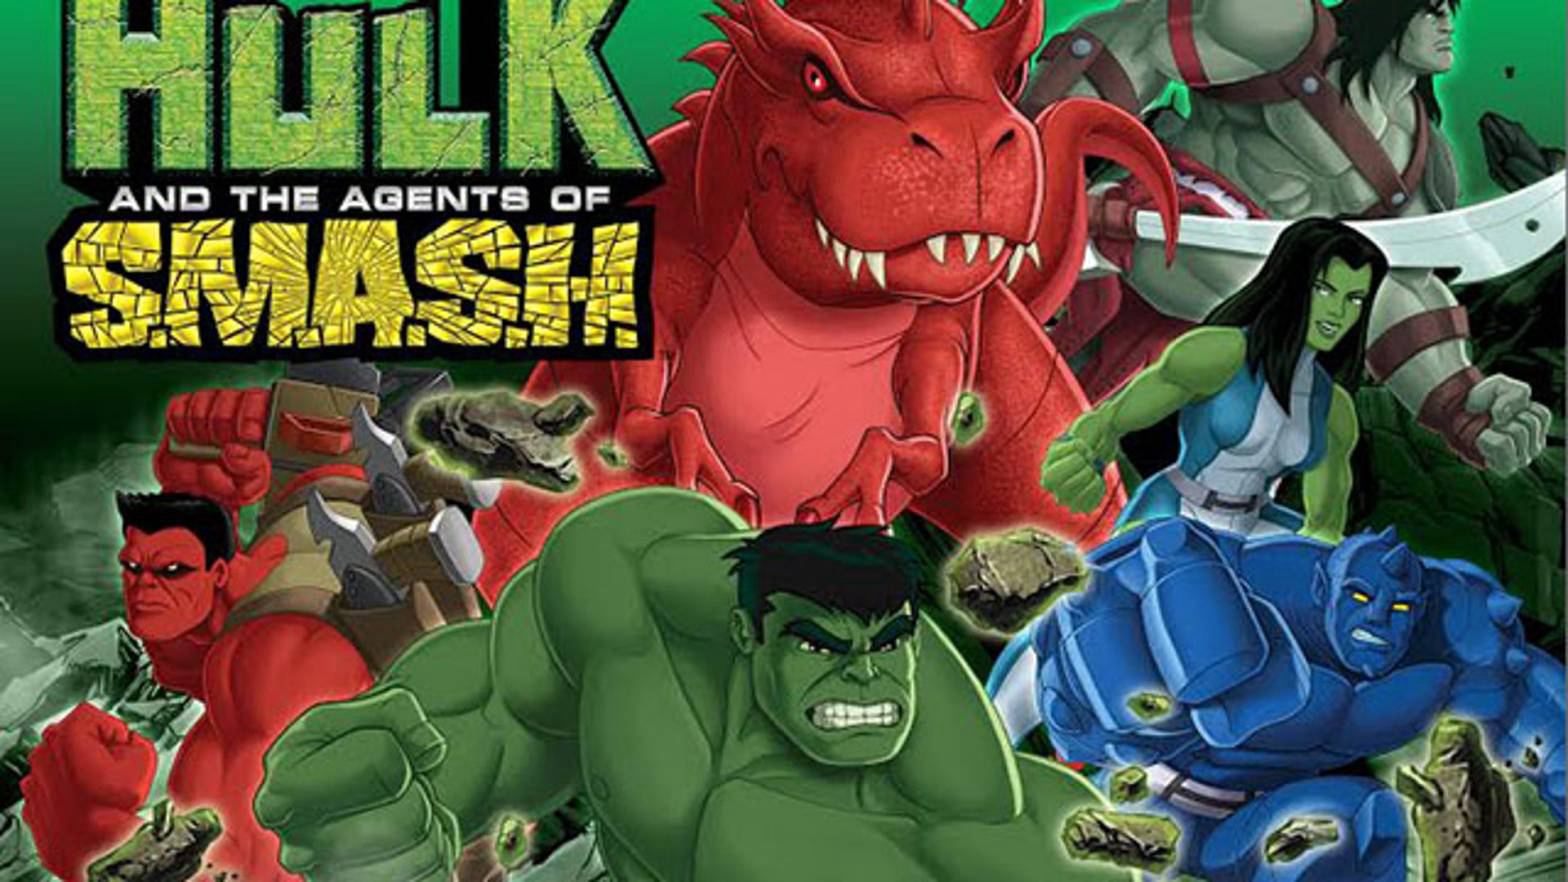 Xem Phim Hulk Và Đặc Vụ S.M.A.S.H, Hulk And The Agents Of S.M.A.S.H. 2013